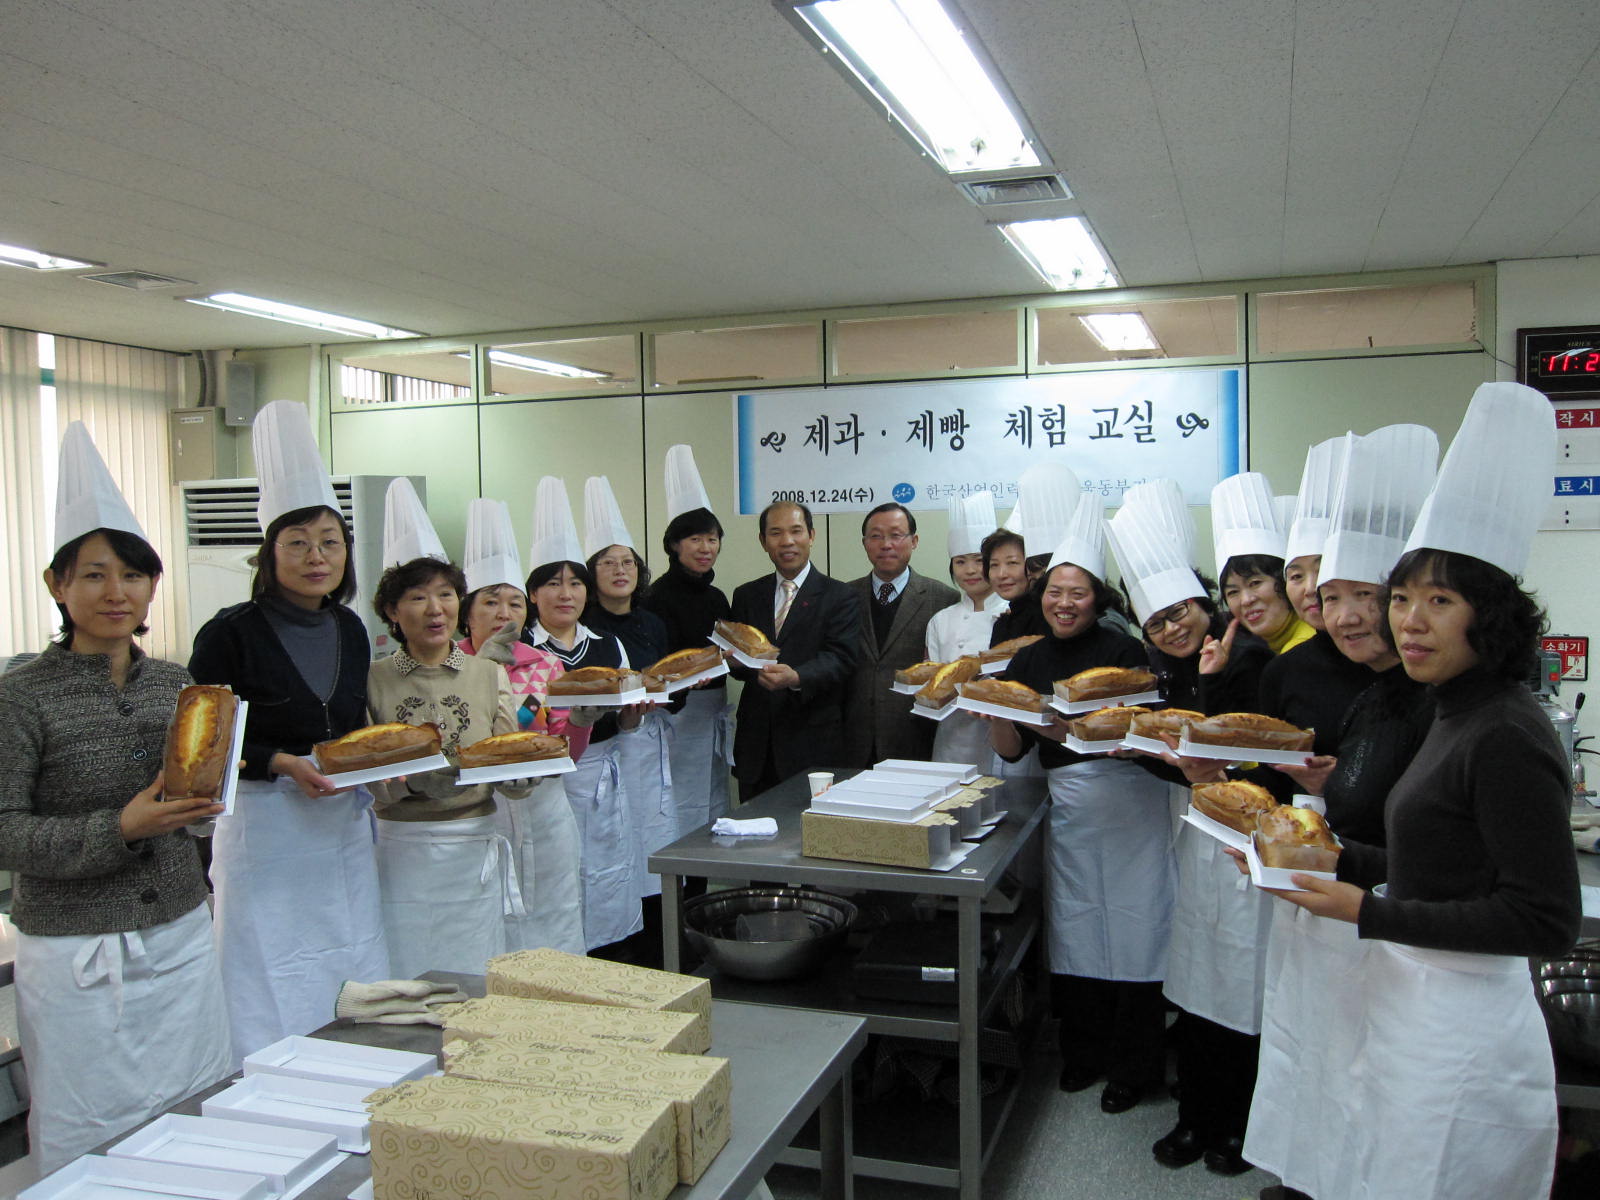 제과제빵 체험교실(12월24일)